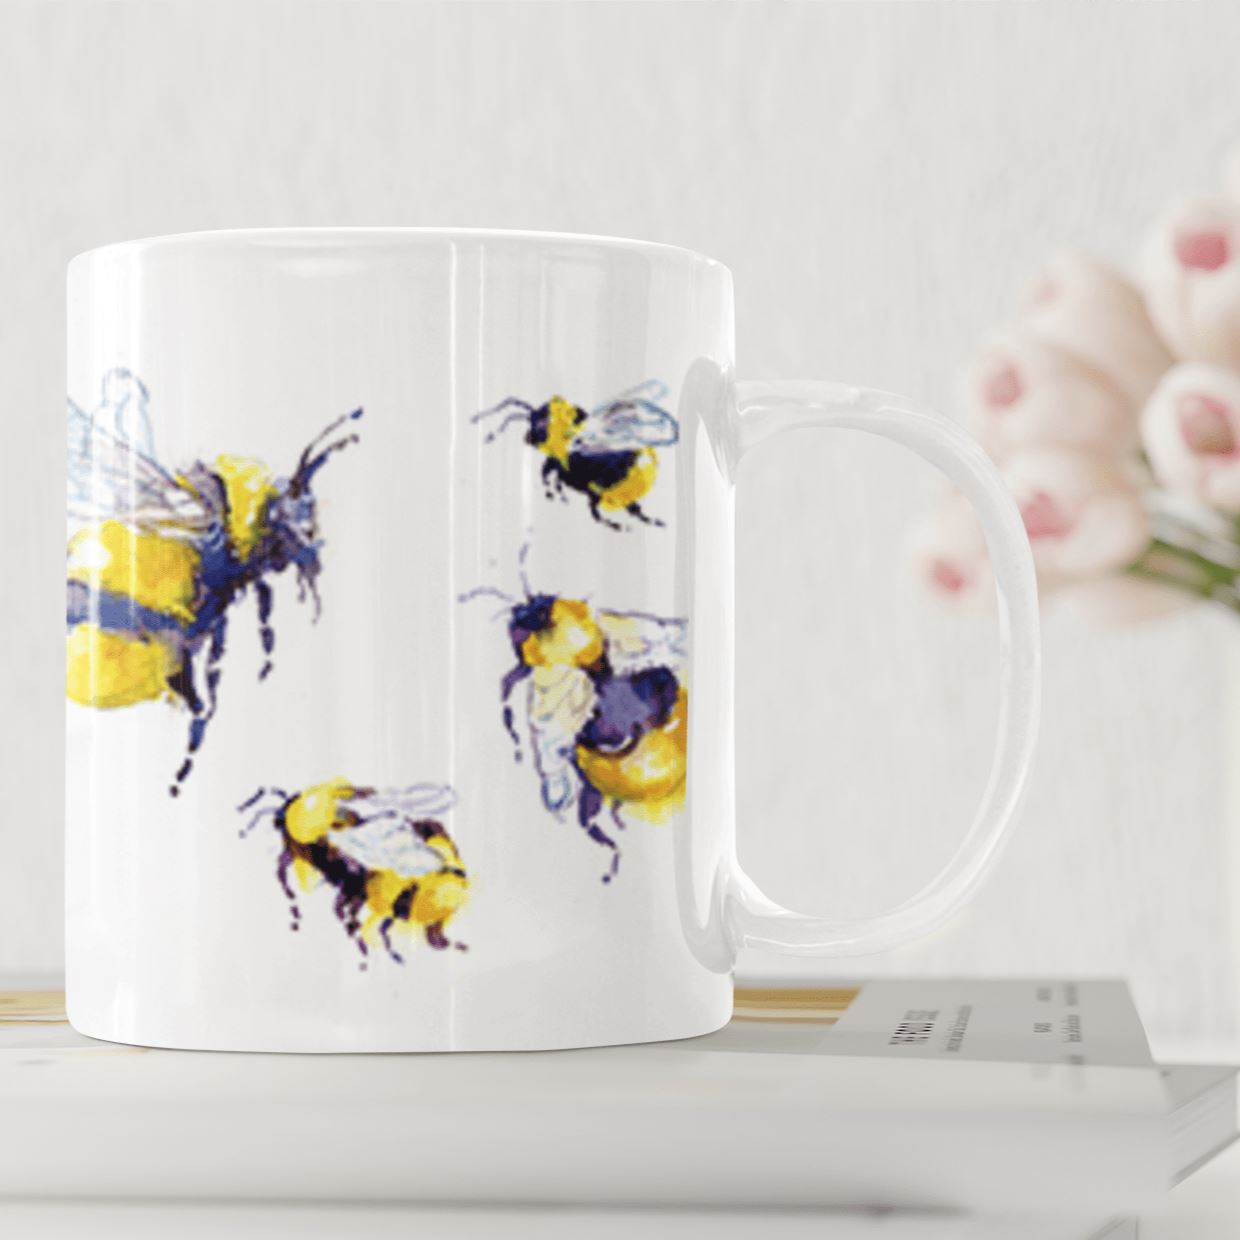 Garden Bumble bee Buzzy Bee Ceramic Mug designed by artist Sheila Gill